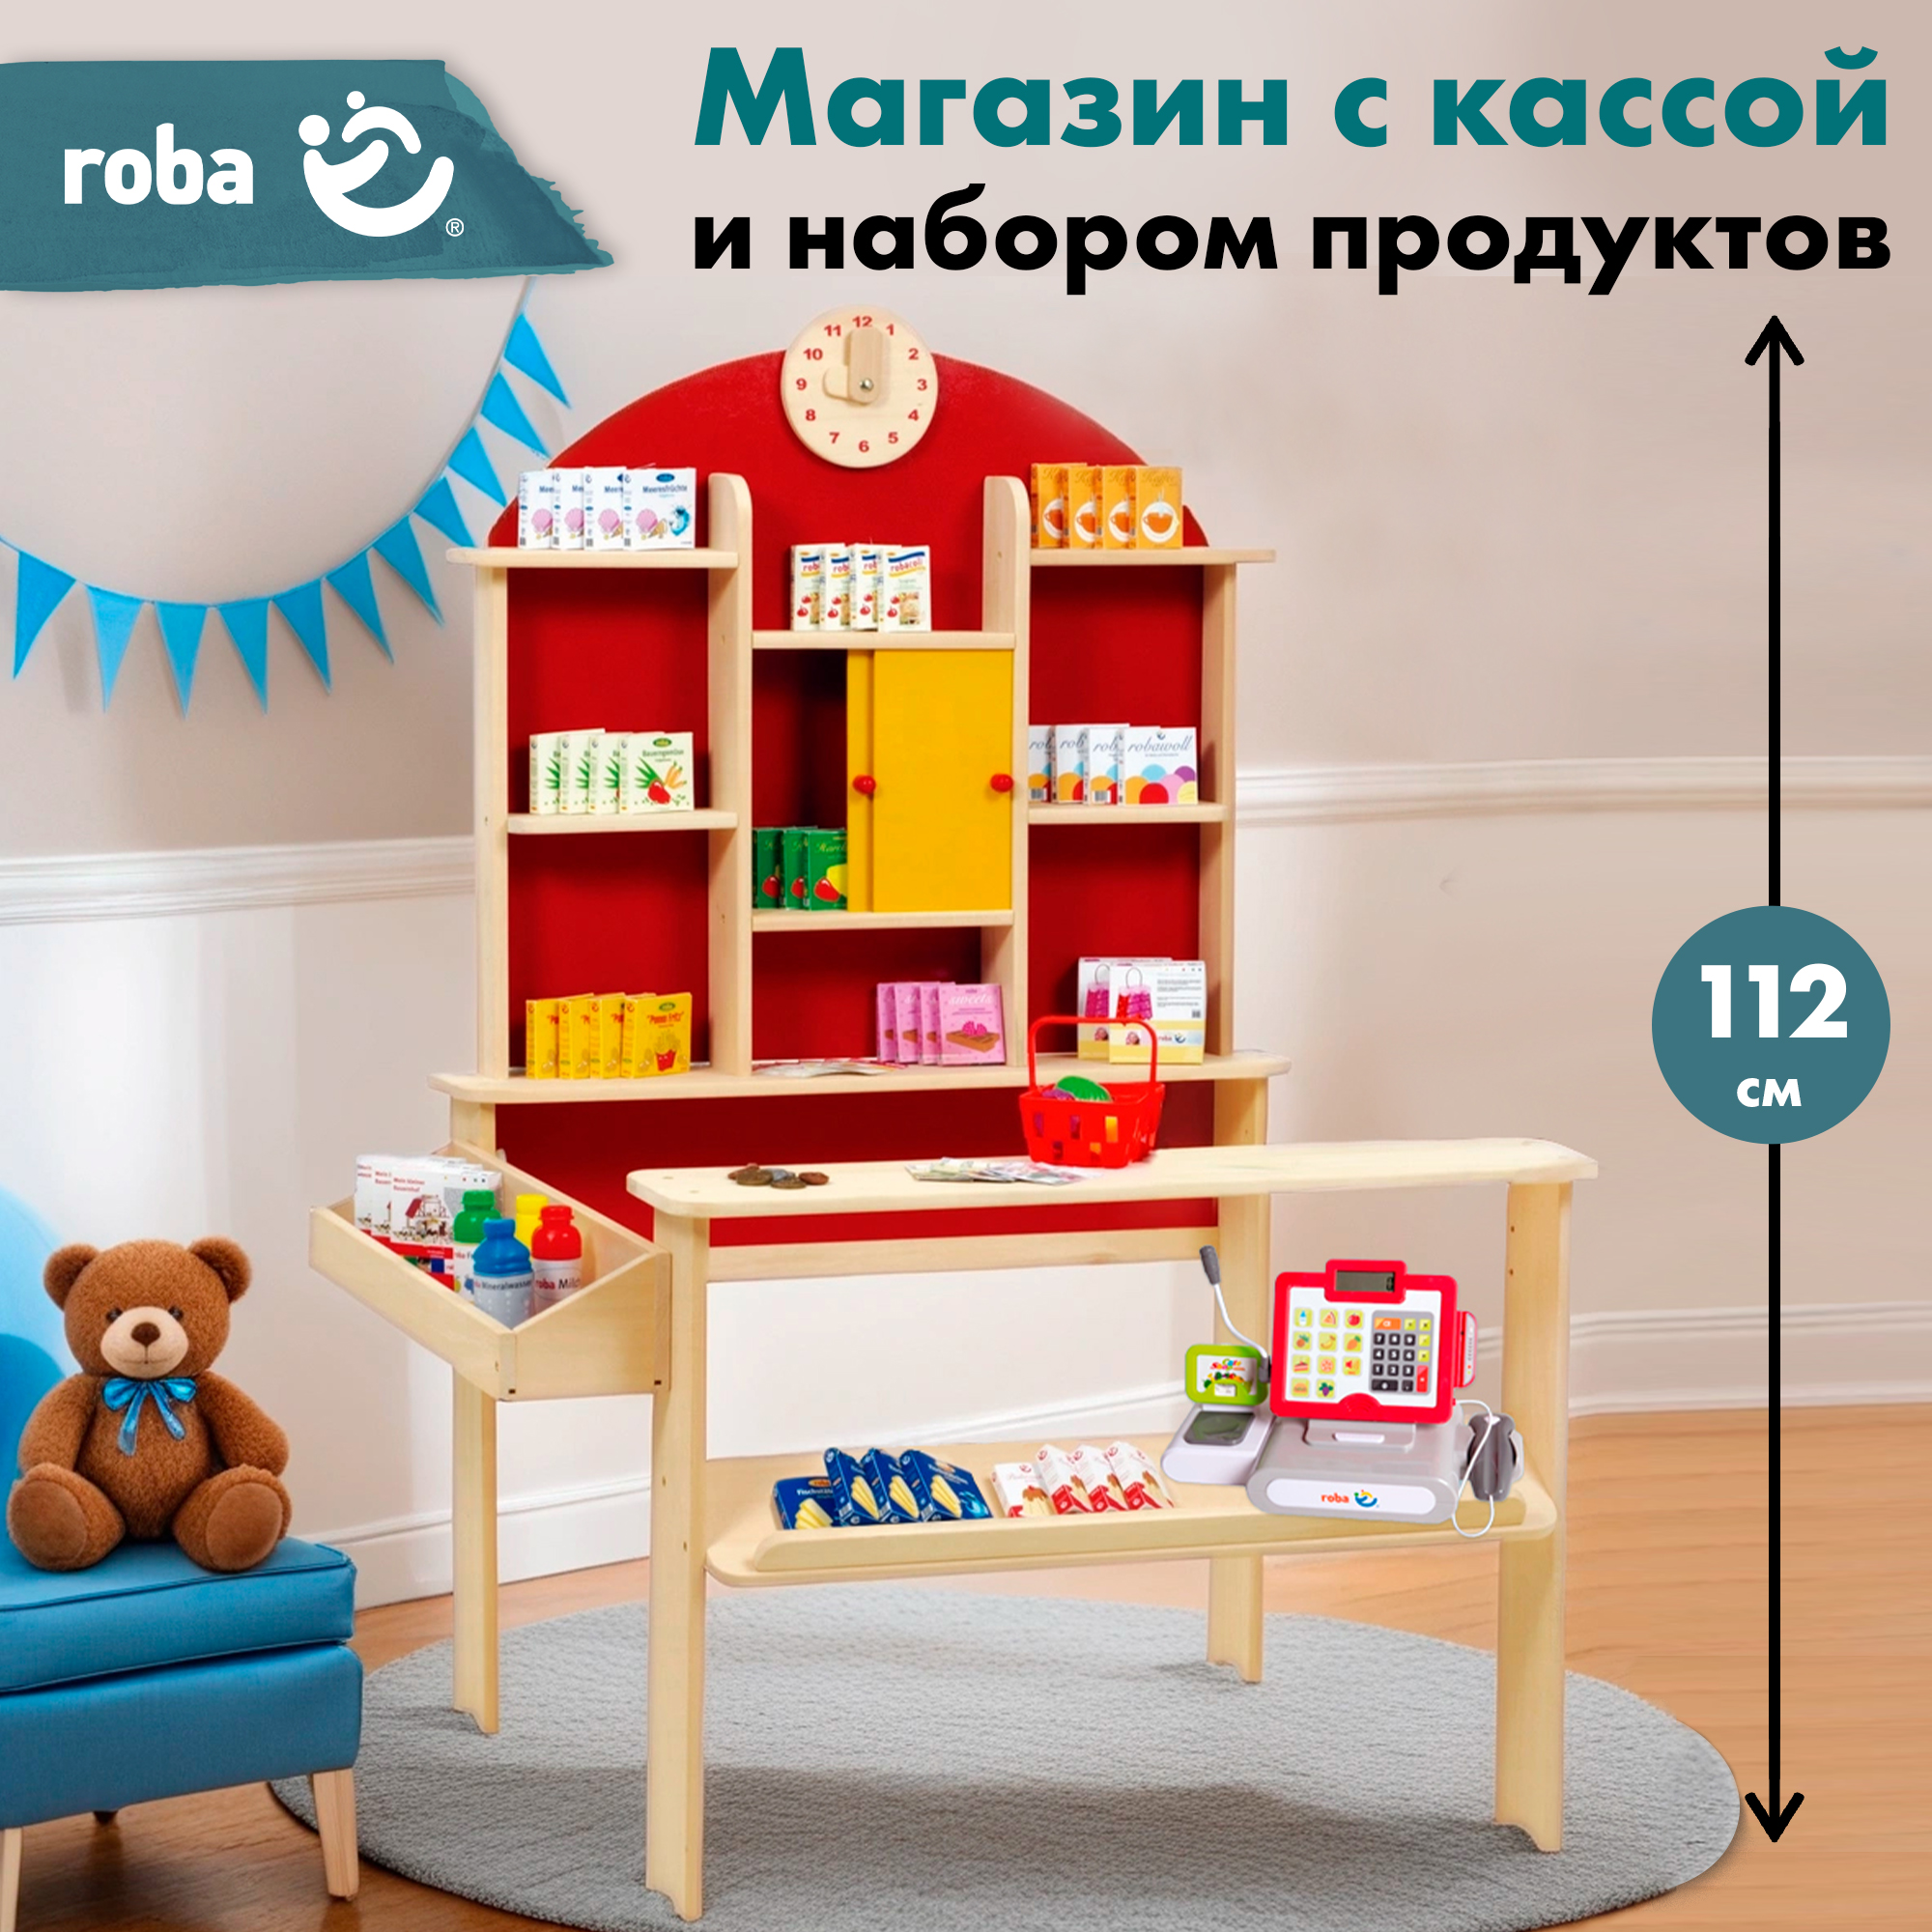 Детский магазин Roba игровой набор: супермаркет с игрушечными продуктами и кассой roba игровой набор продуктов с кассой